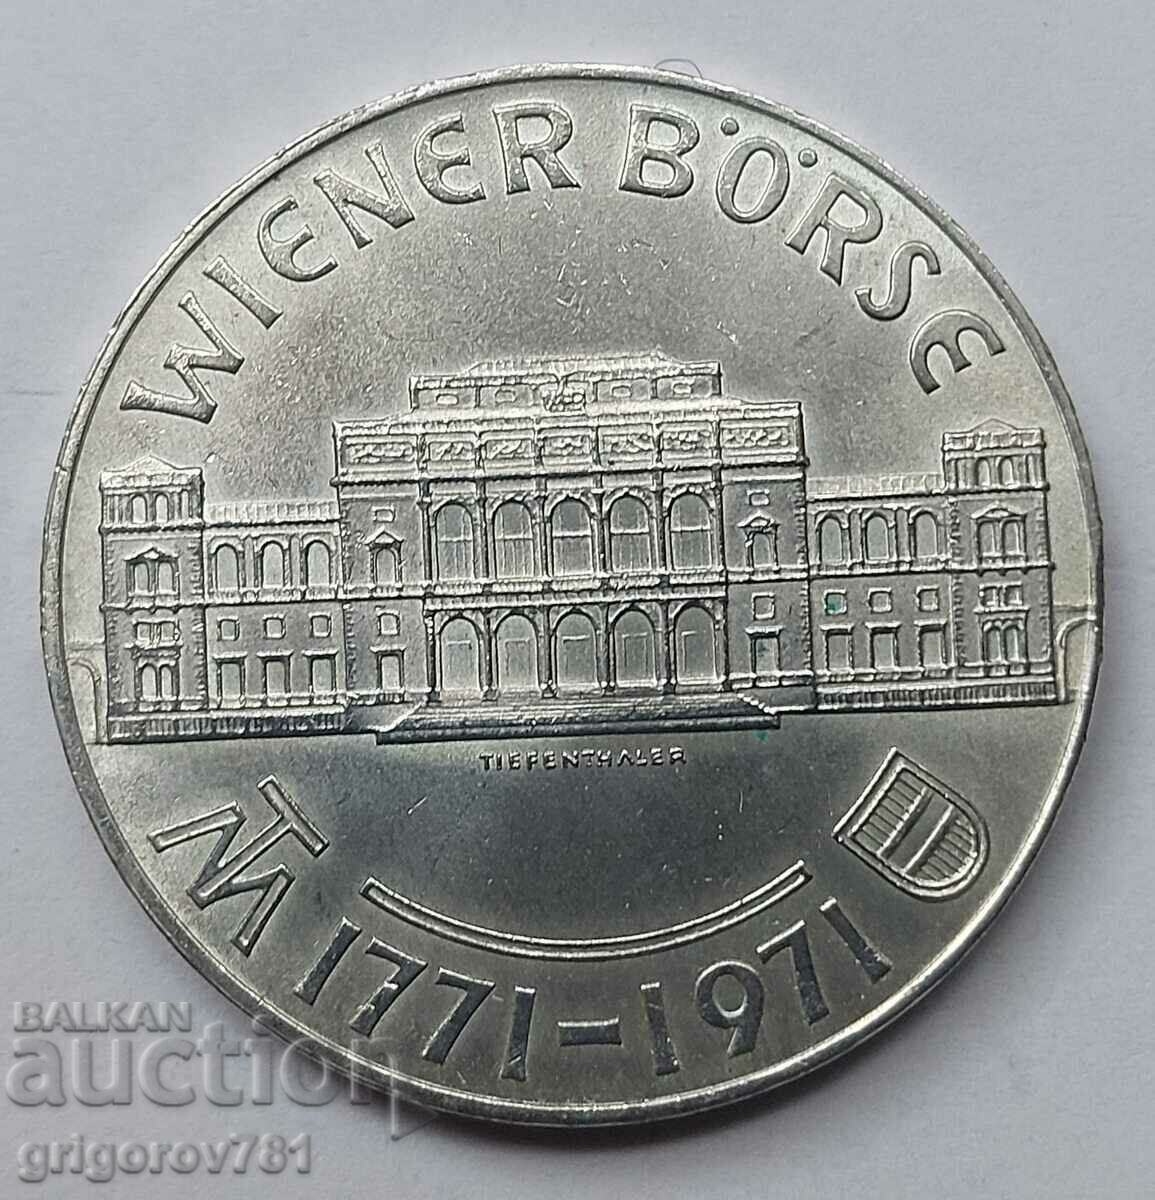 Ασημένιο 25 σελίνια Αυστρία 1971 - Ασημένιο νόμισμα #35